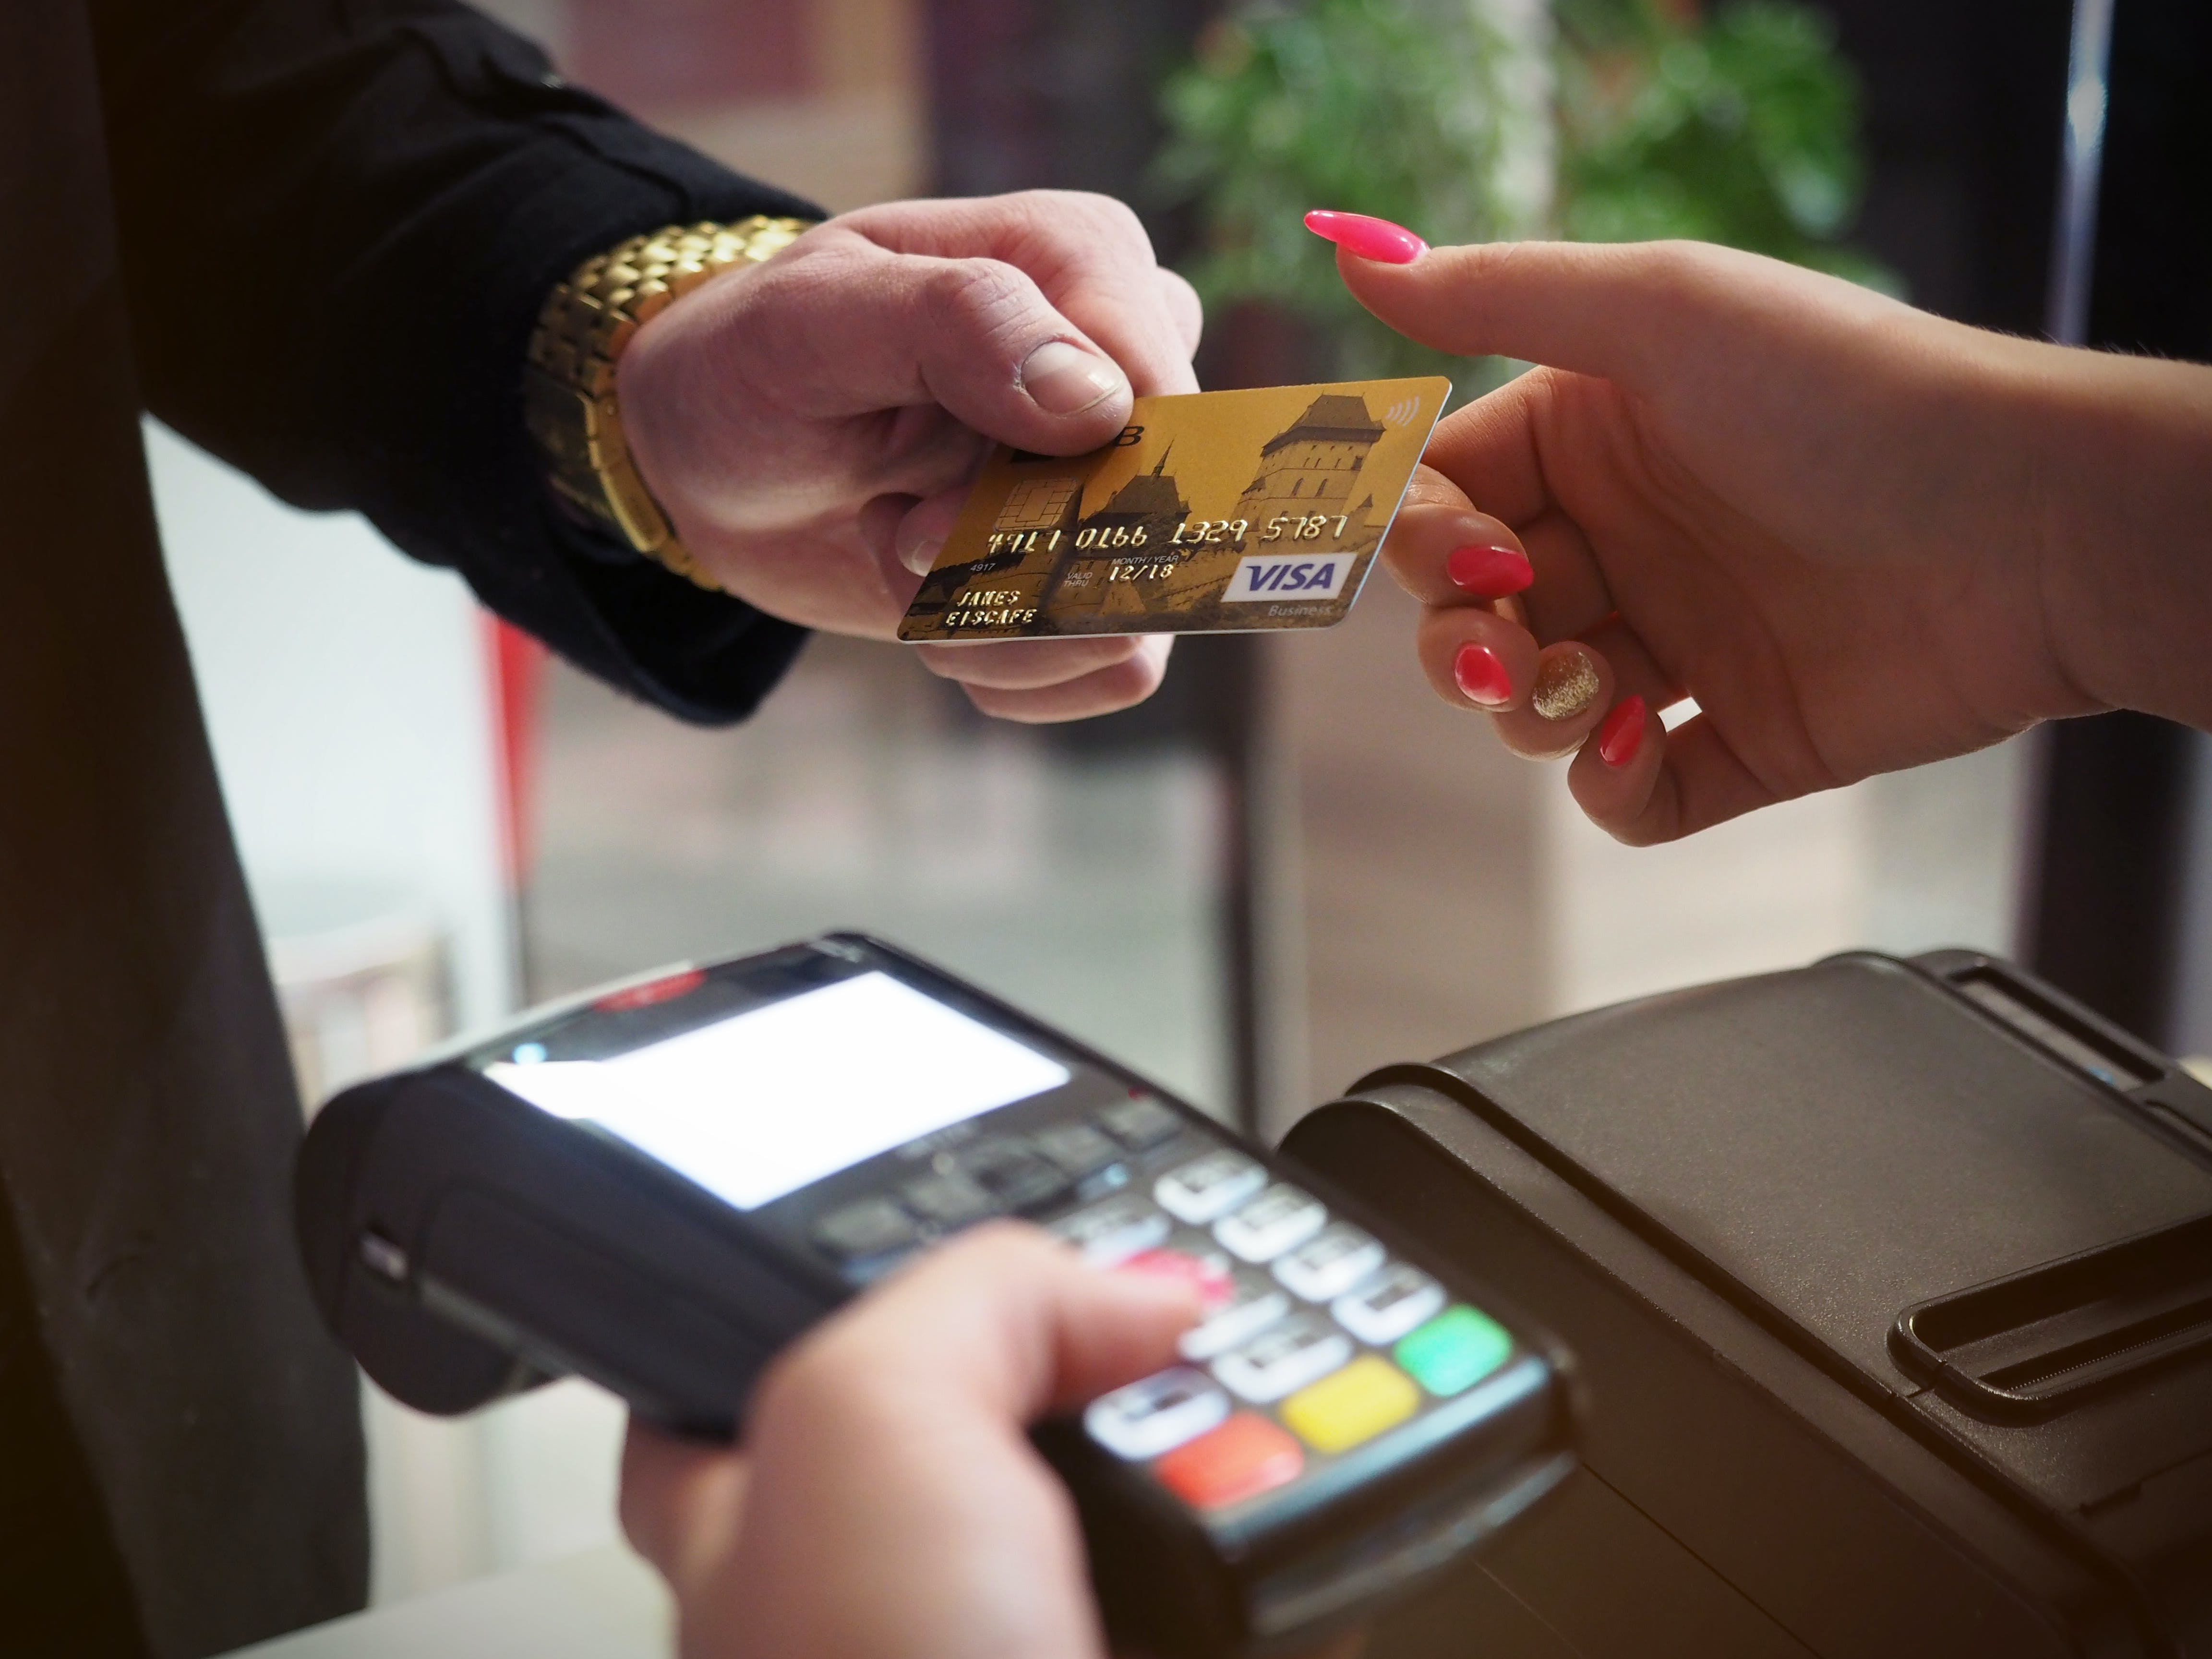 Una persona que paga servicios utilizando una tarjeta de cajero automático. | Fuente: Pexels